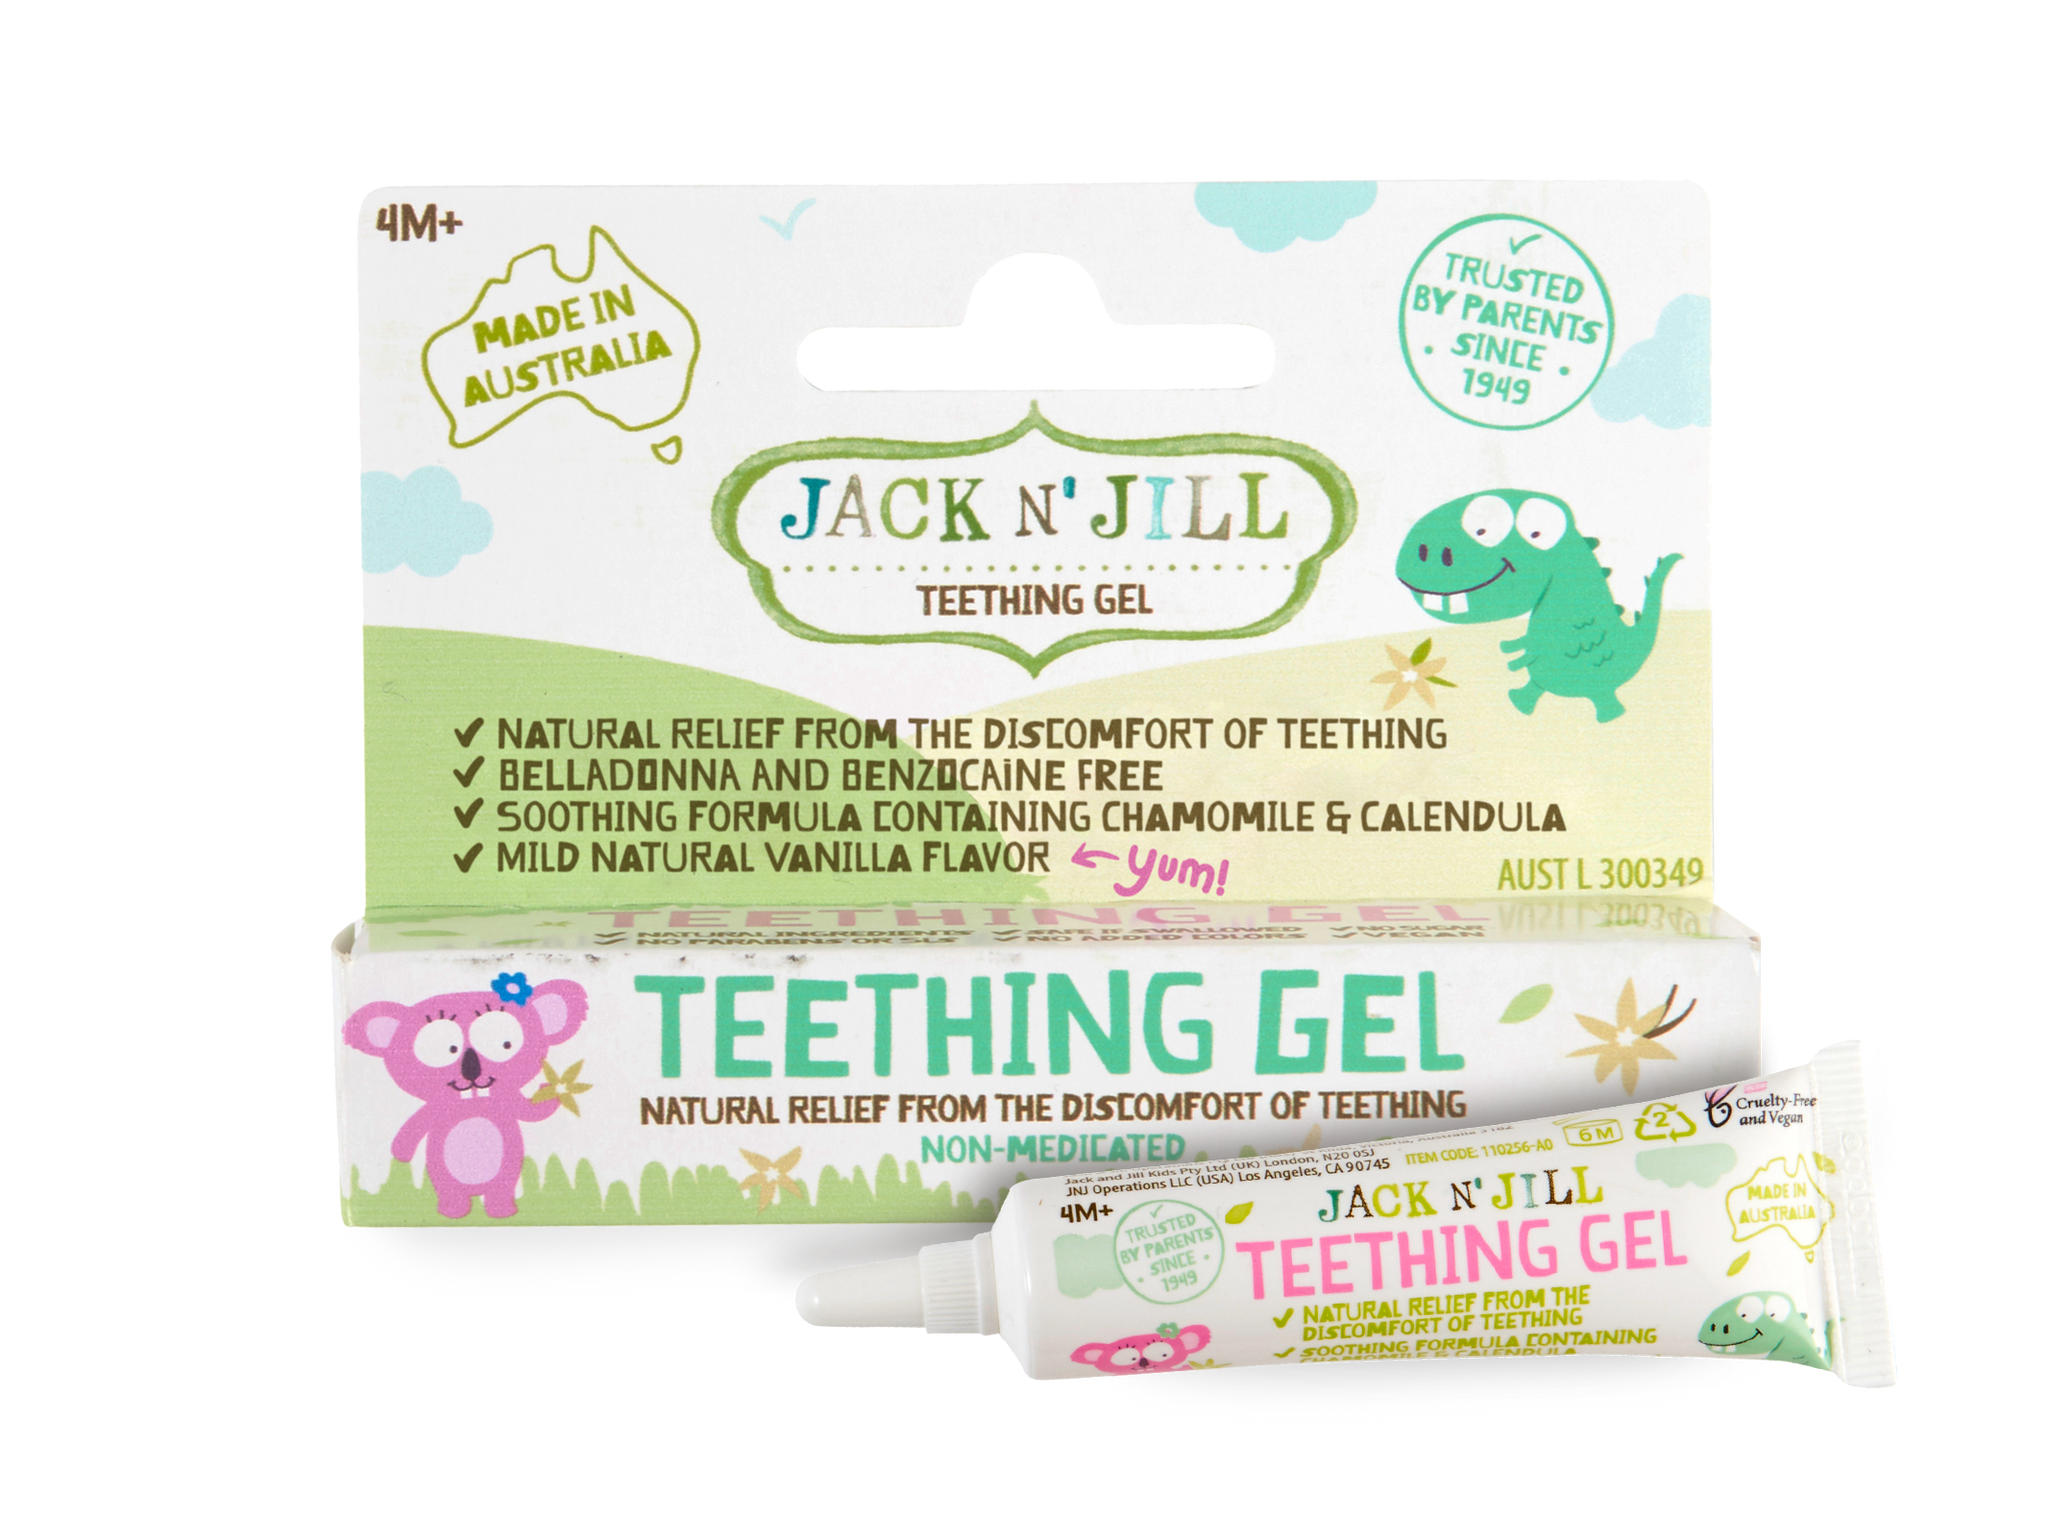 Jack N Jill, Teething Gel, tandenpasta, natuurlijke tandenpasta, tanden doorkomen, bijtring, natuurlijke teething gel, fluoride vrij, fluorid-free